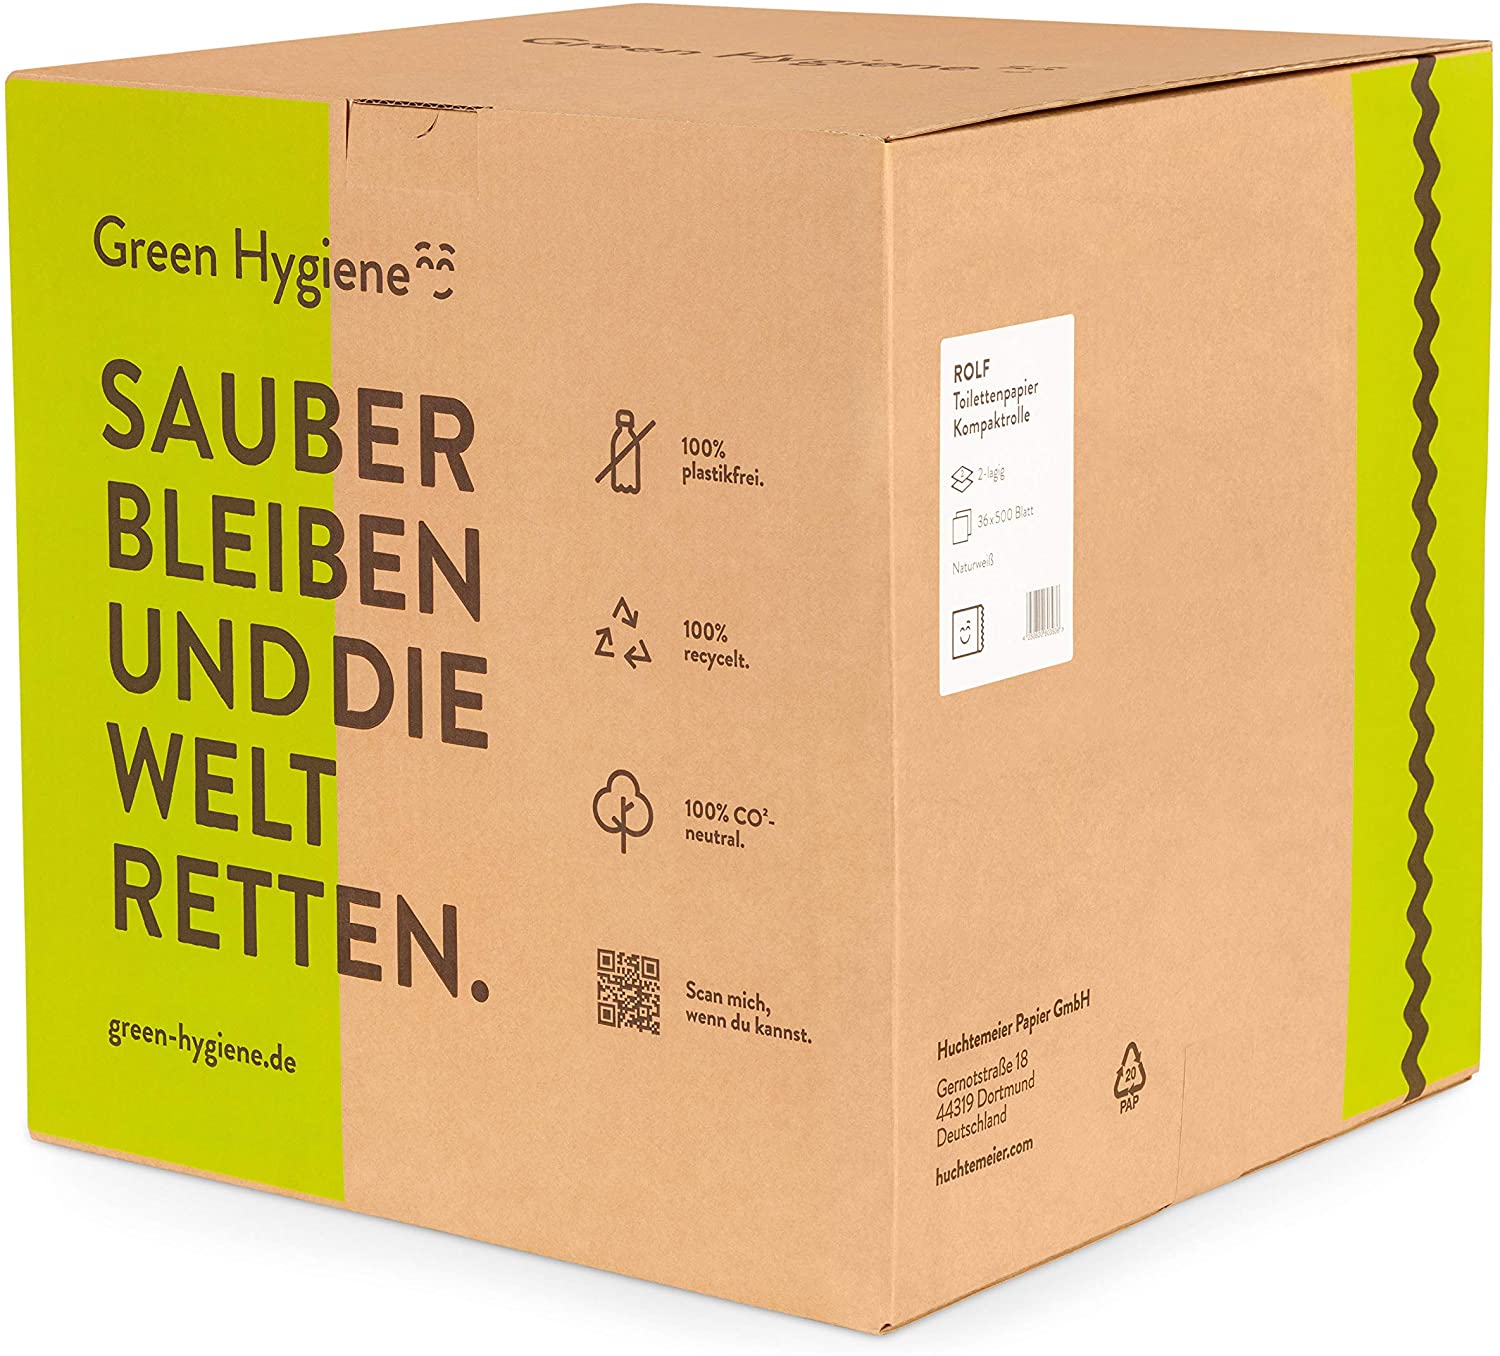 Green Hygiene - ROLF Toilettenpapier 2-lagig 36 Rollen